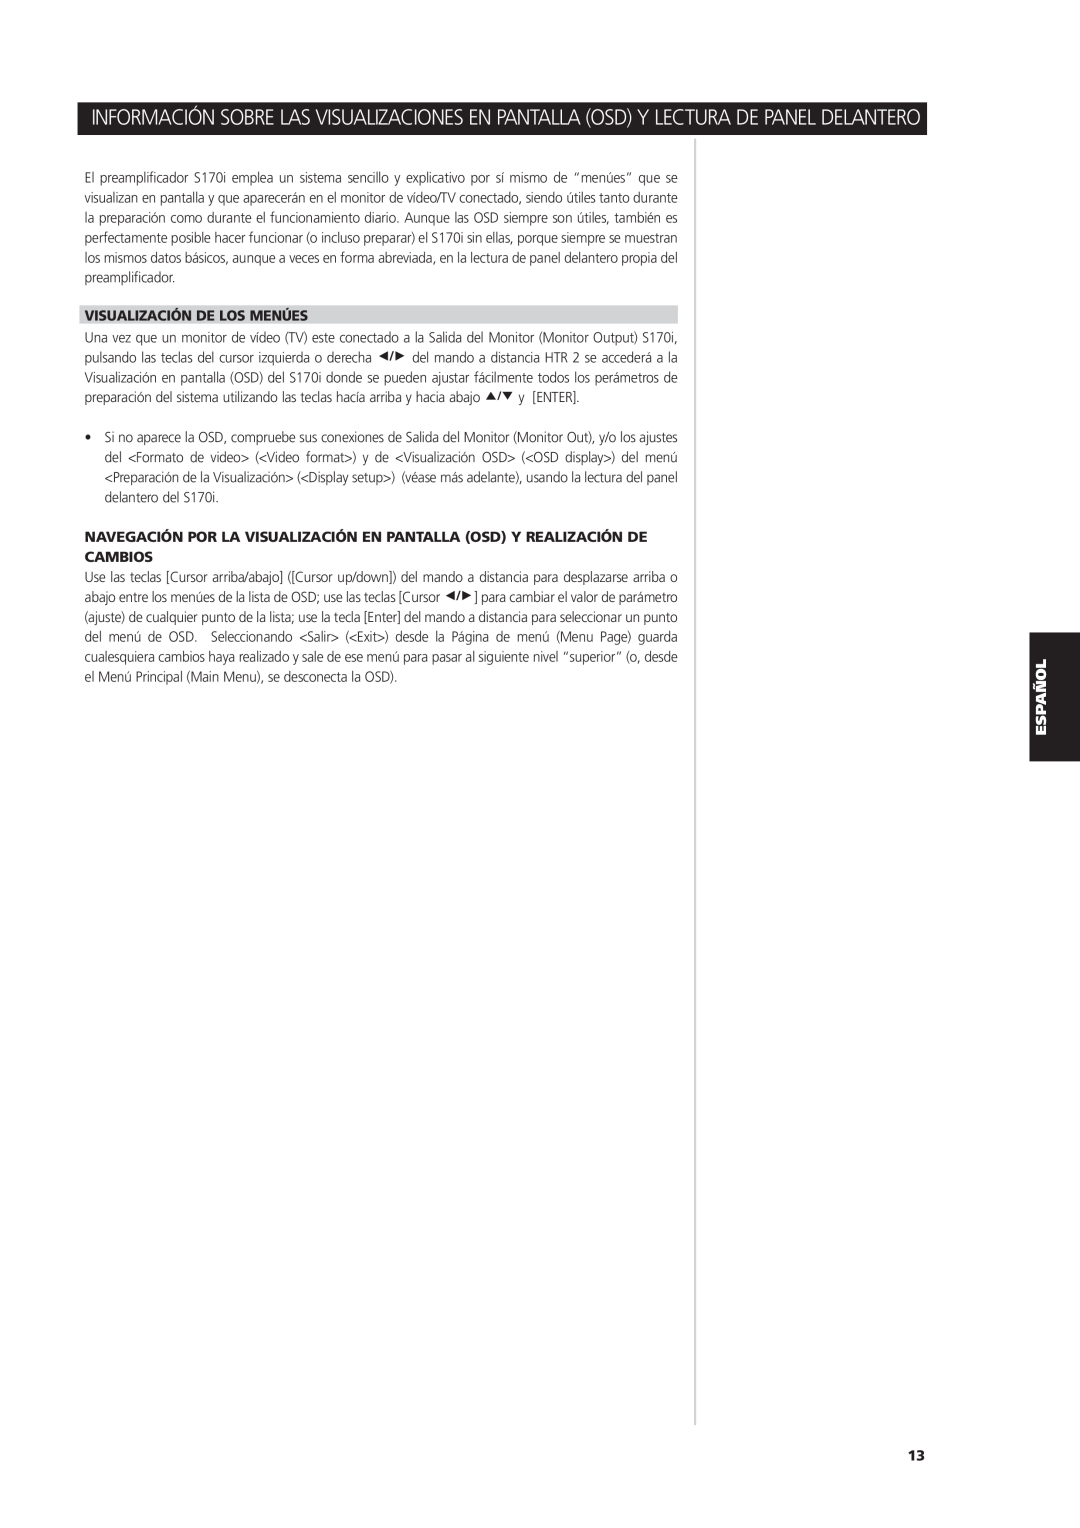 NAD S170iAV owner manual Visualización De Los Menúes, Cambios, y ENTER 